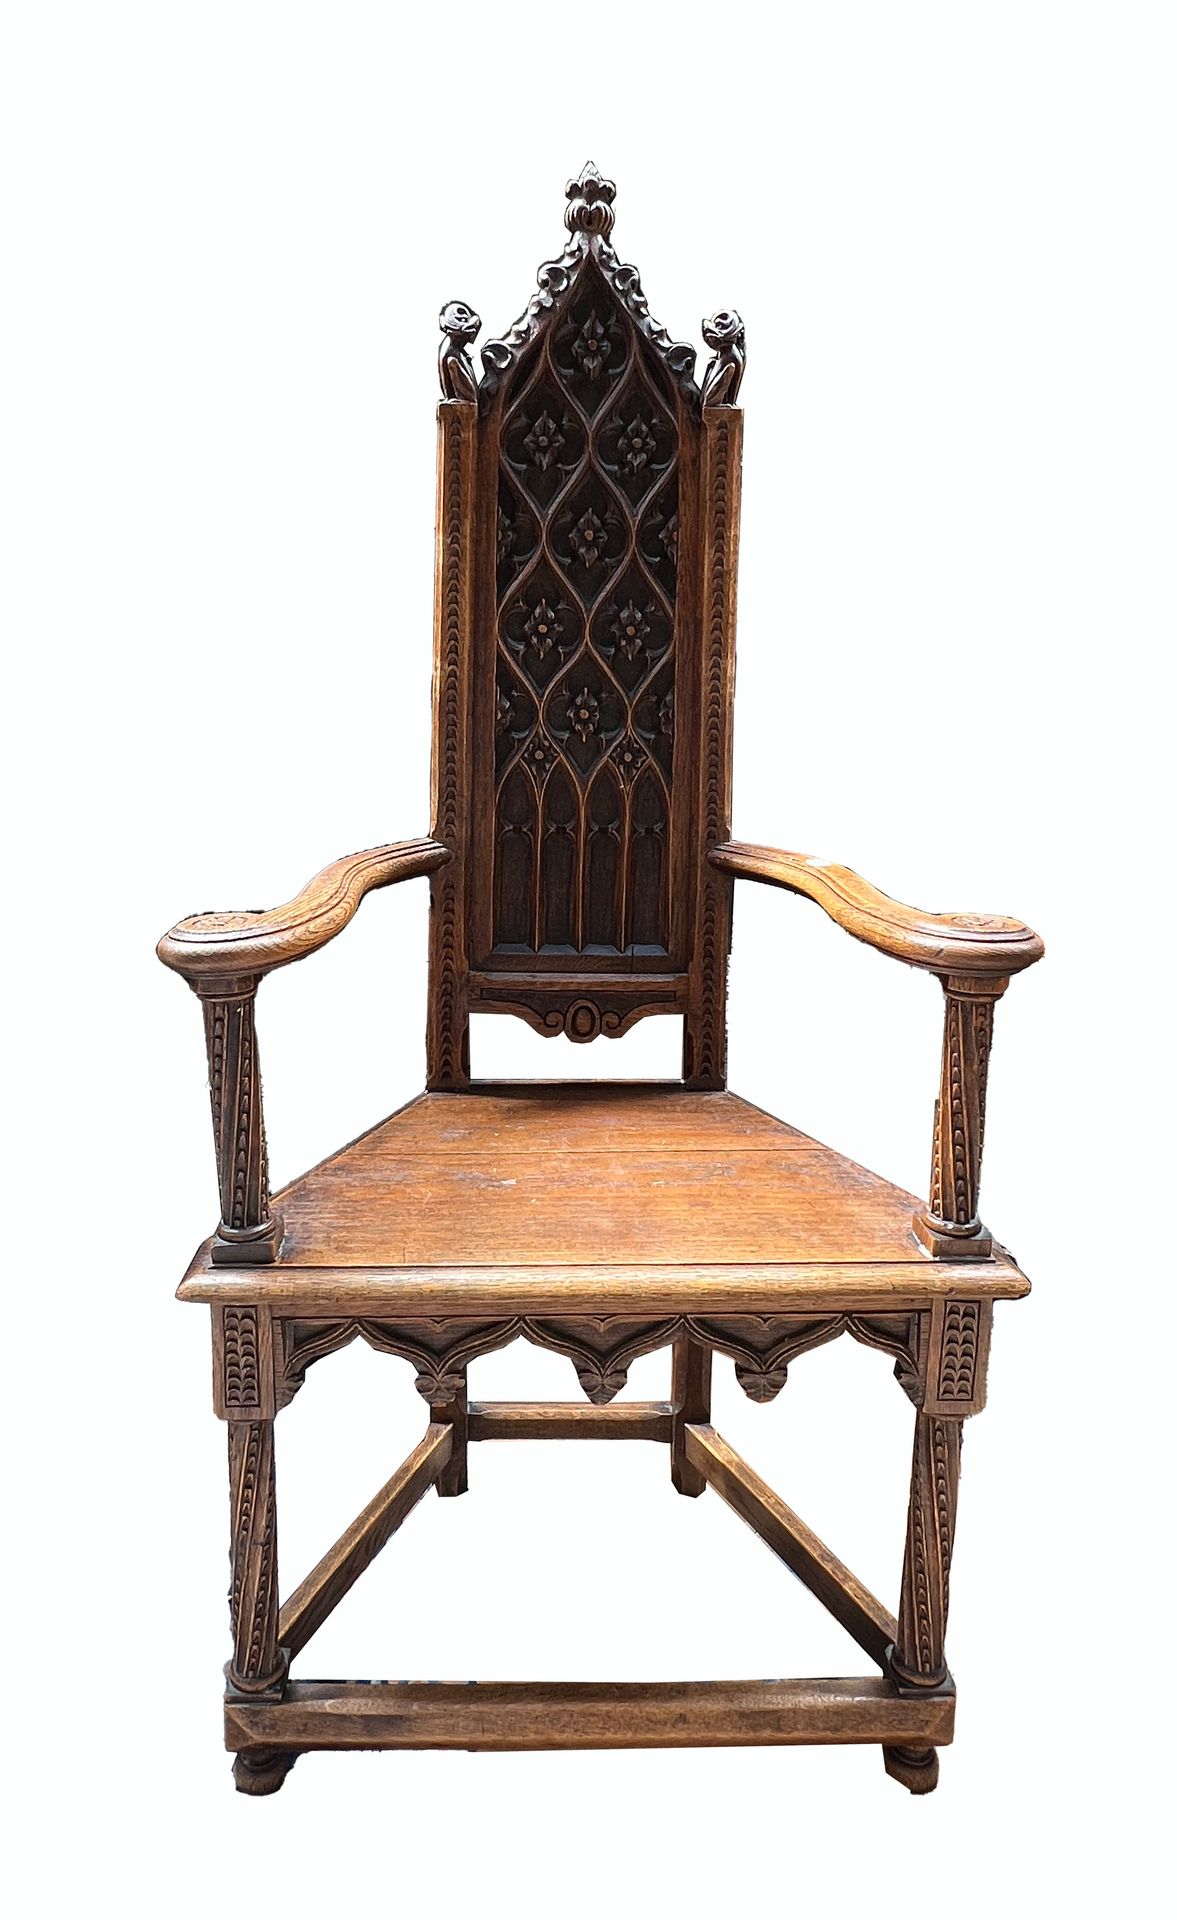 Null 一把高背雕花和模制的木制卡斯特内尔椅，背部装饰有披针形和花卉的图案。

搁置在4个雕刻的脚上。

新哥特式的灵感。

H.140厘米

P.D.: 约&hellip;